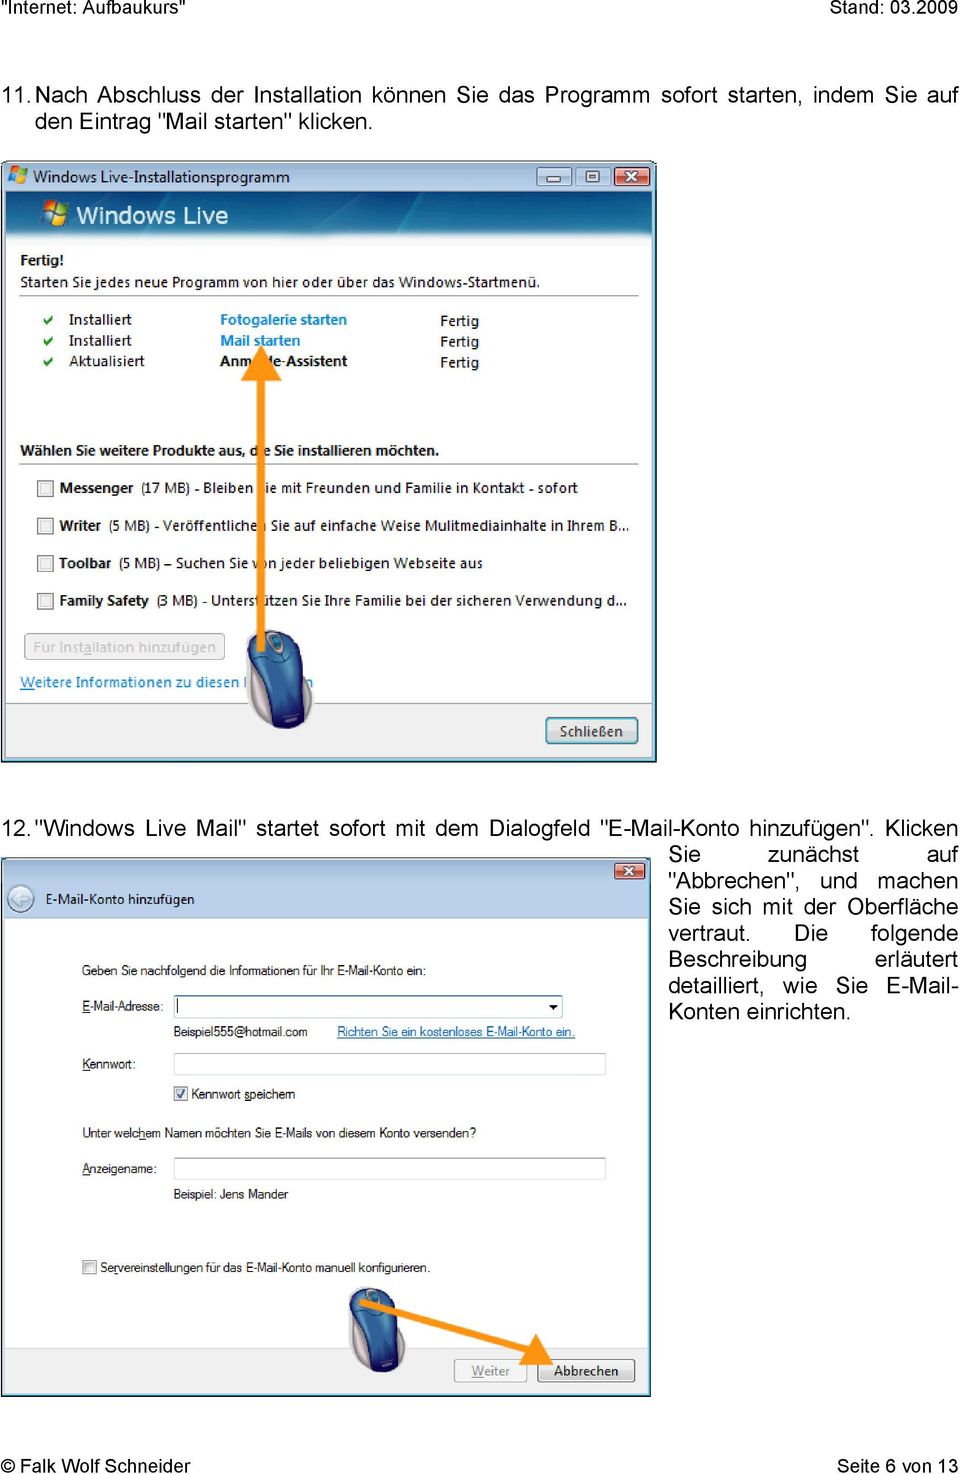 "Windows Live Mail" startet sofort mit dem Dialogfeld "E-Mail-Konto hinzufügen".